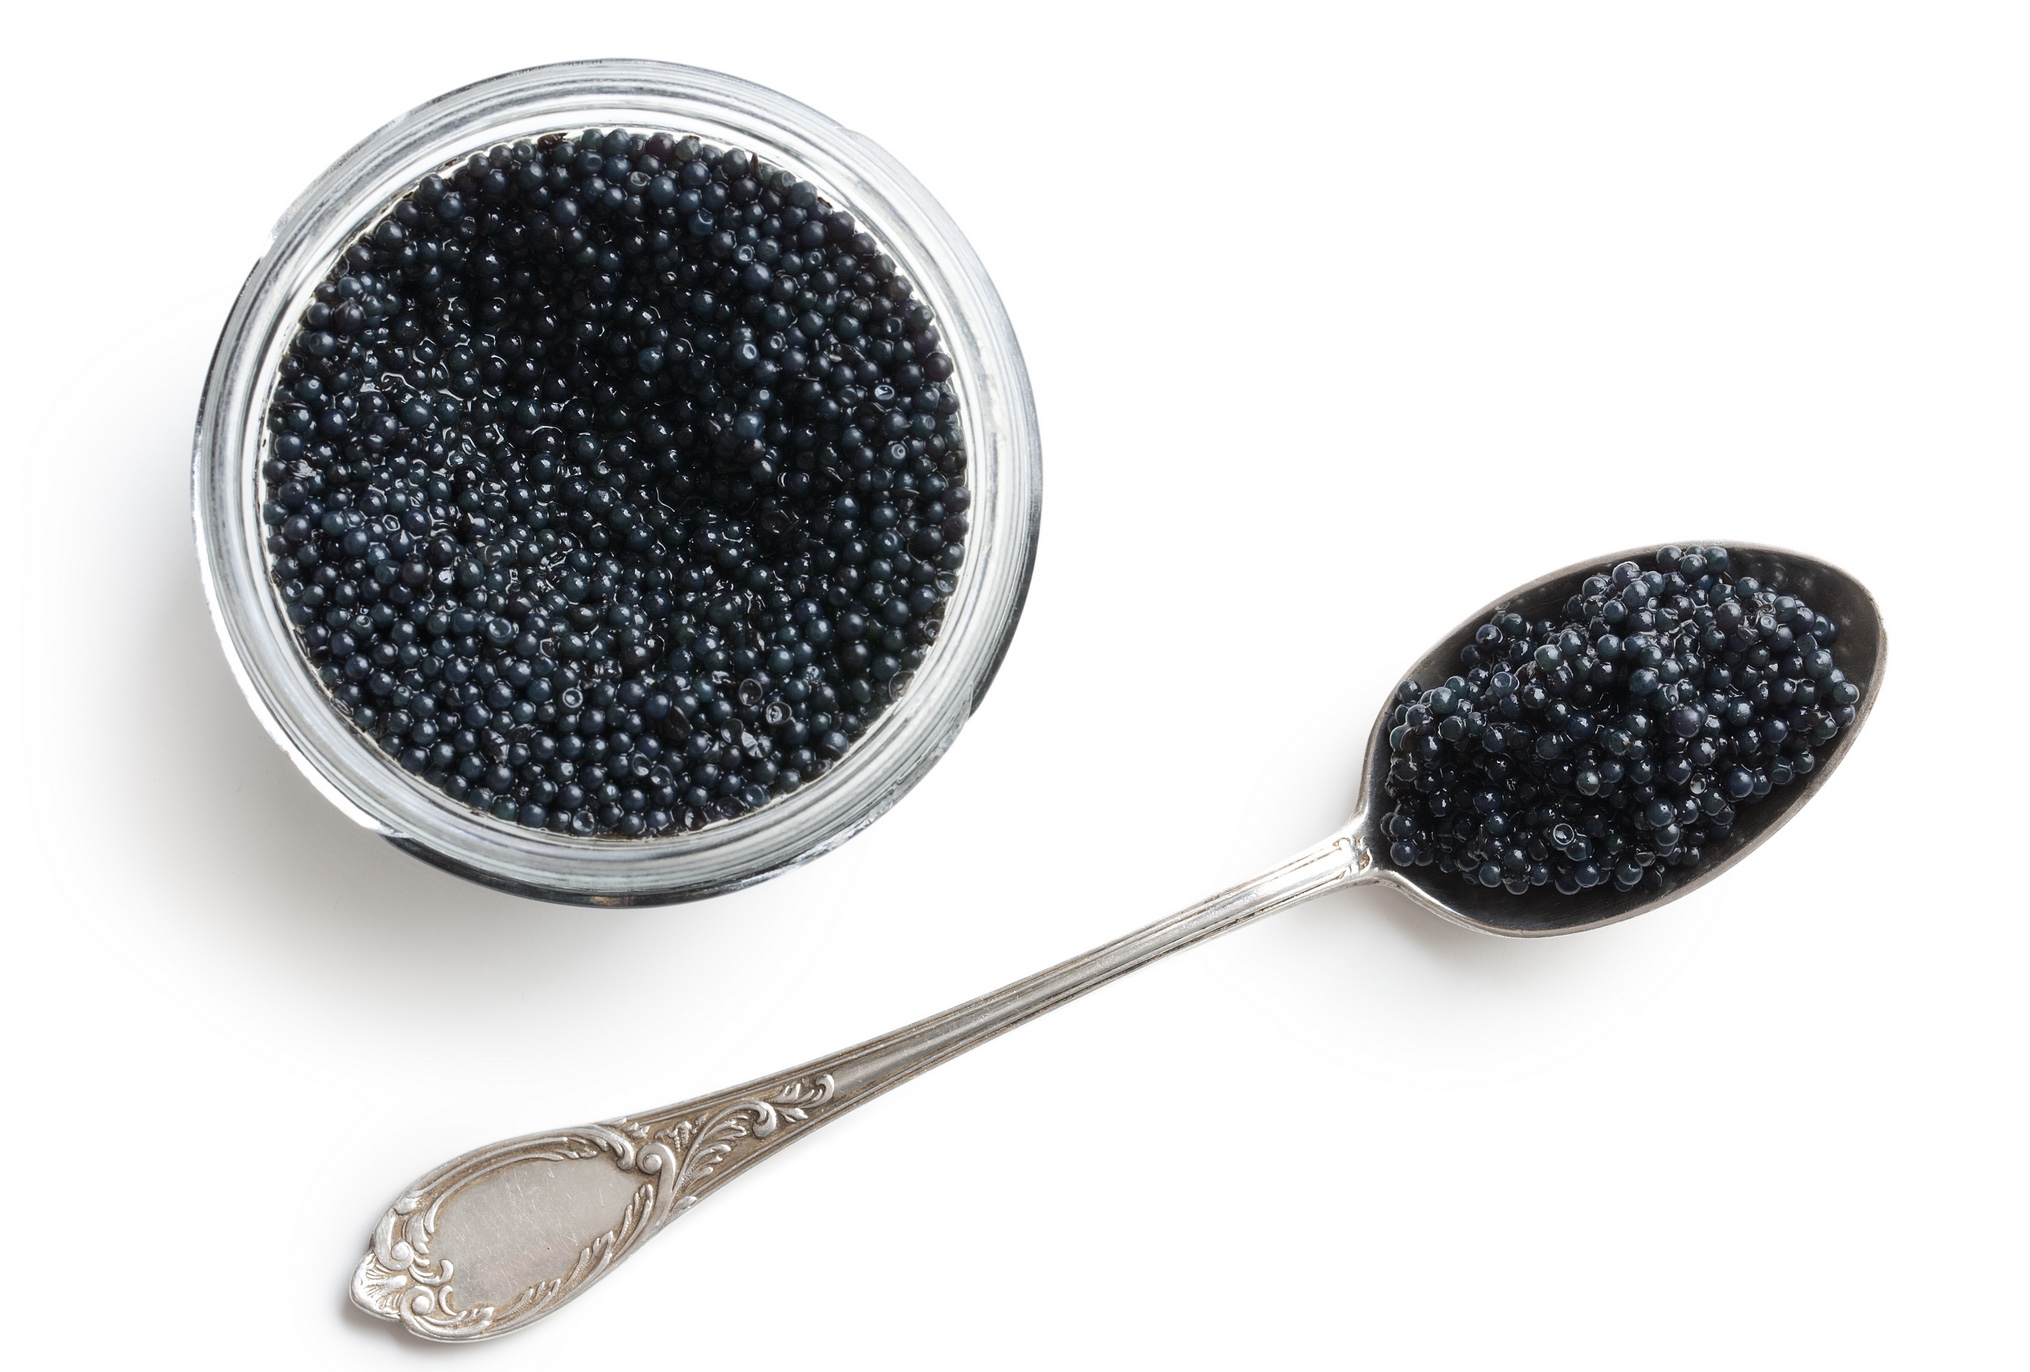 Wageningen: Störkaviar auf Zellbasis